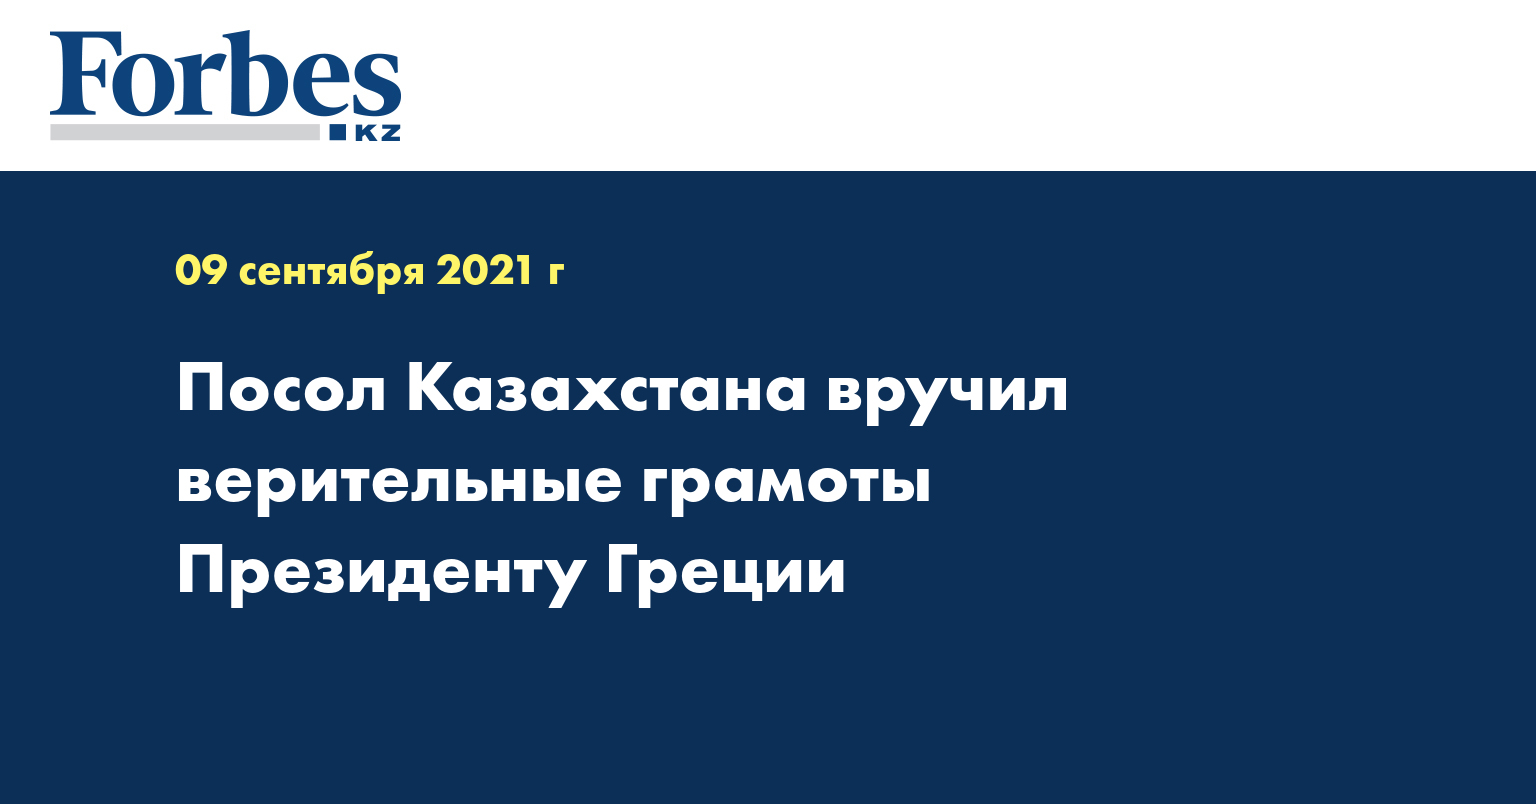 Посол Казахстана вручил верительные грамоты Президенту Греции